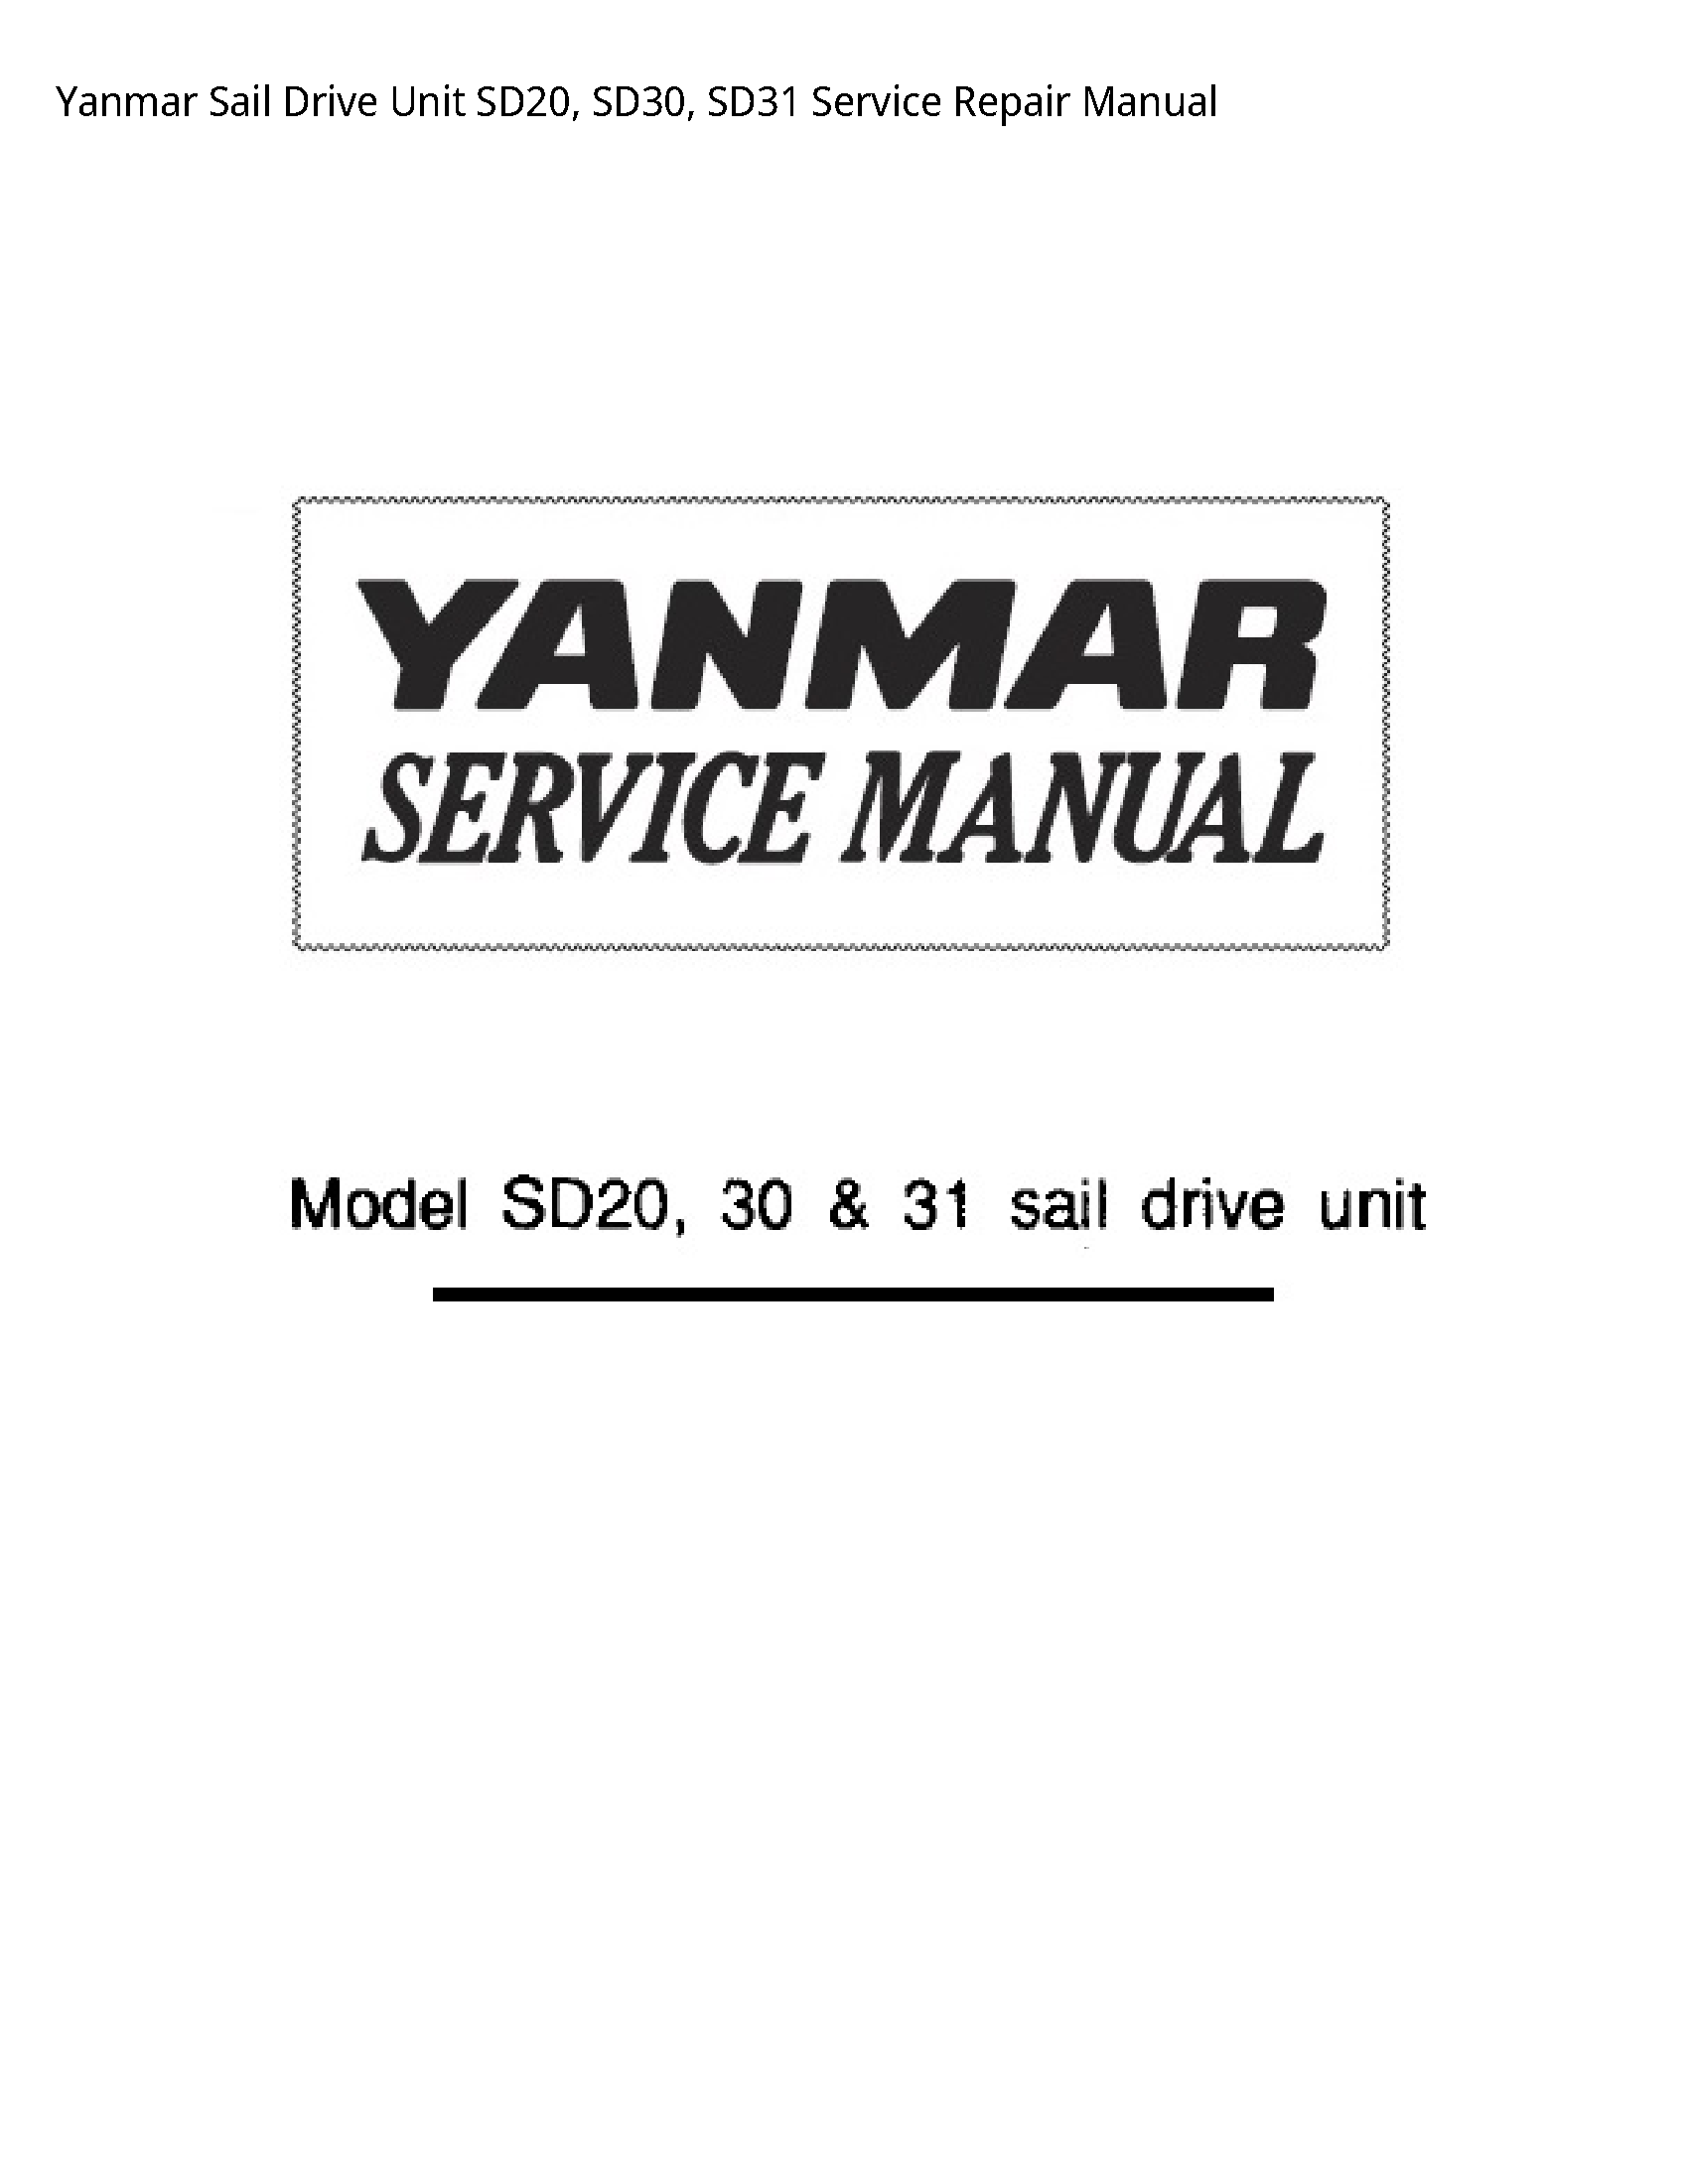 Yanmar SD20 Sail Drive Unit manual